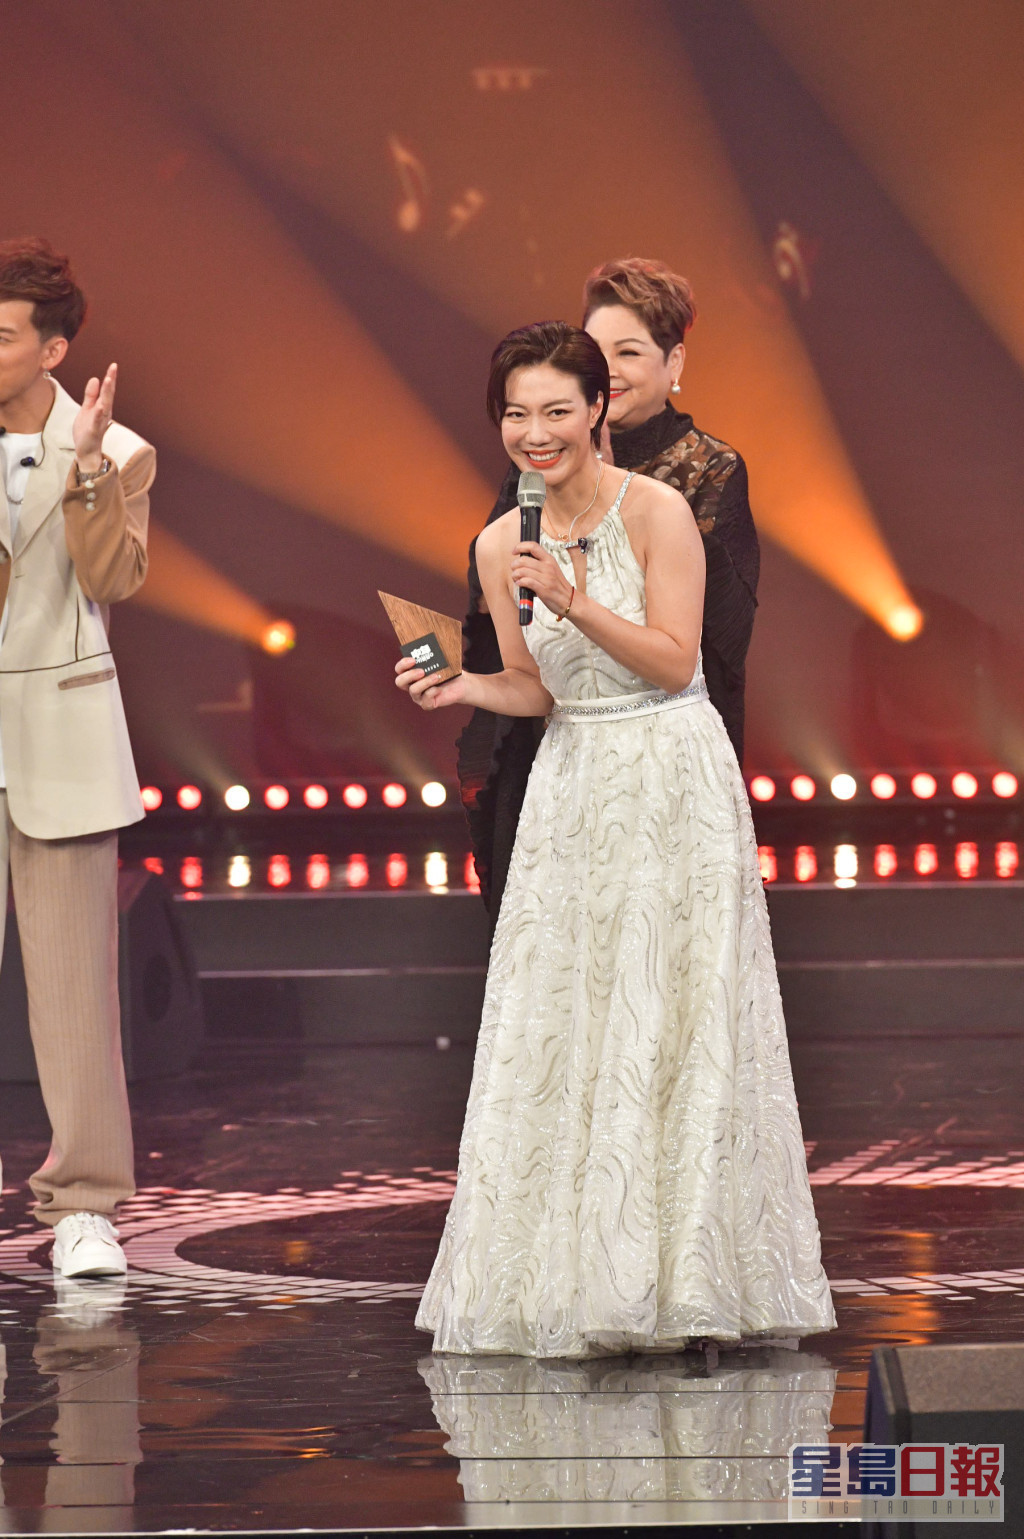 虽然大热龙婷只获得第4名，三甲不入，但获得观众票选的「观众最爱好声音」奖。